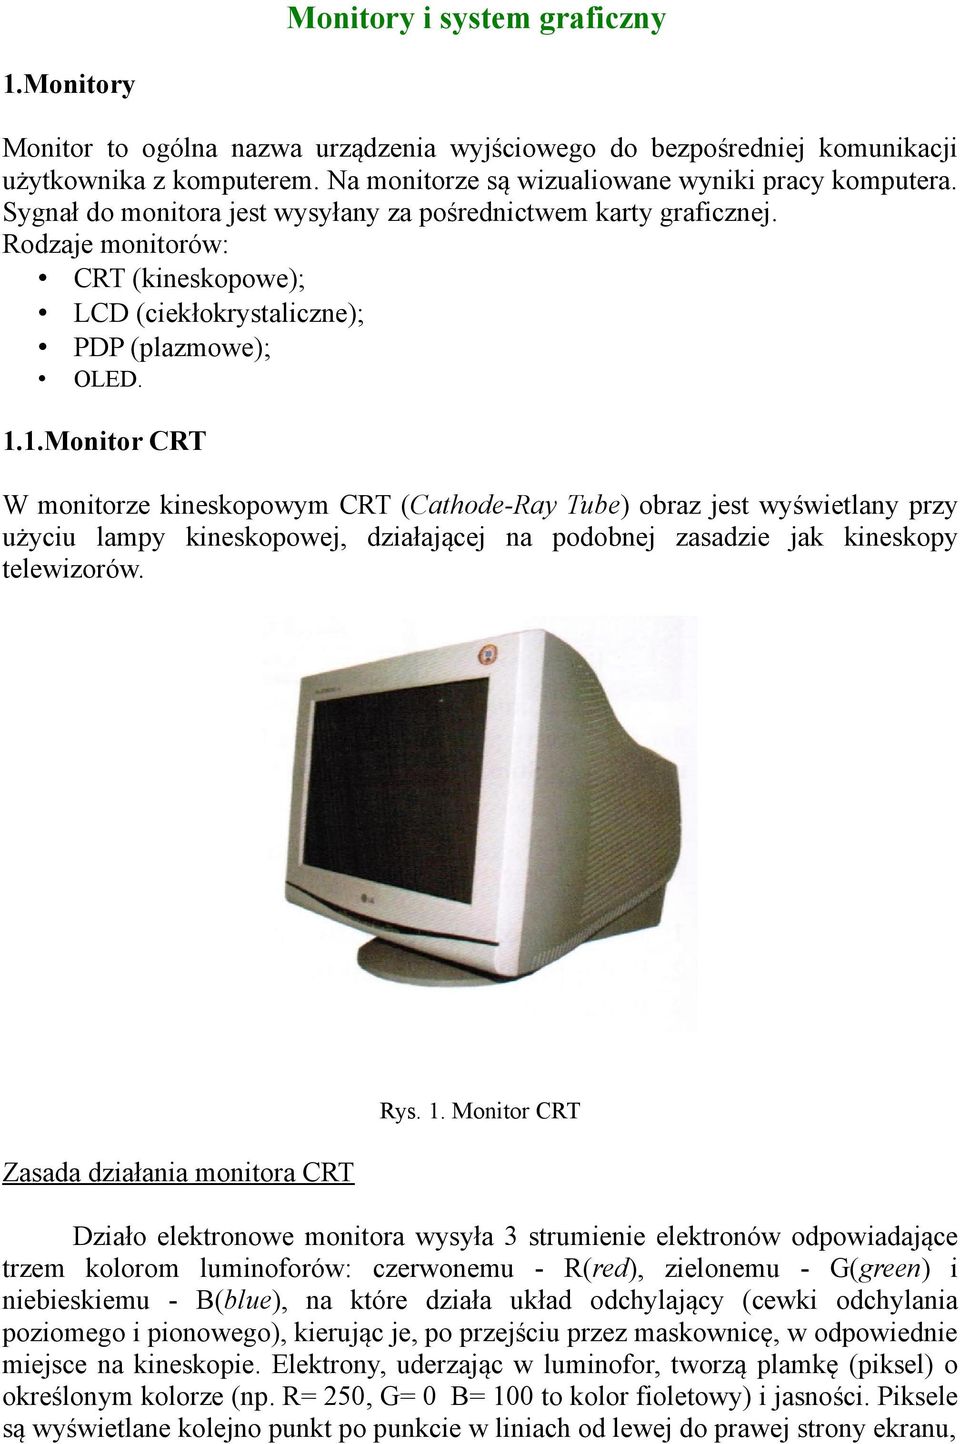 1.Monitor CRT W monitorze kineskopowym CRT (Cathode-Ray Tube) obraz jest wyświetlany przy użyciu lampy kineskopowej, działającej na podobnej zasadzie jak kineskopy telewizorów.